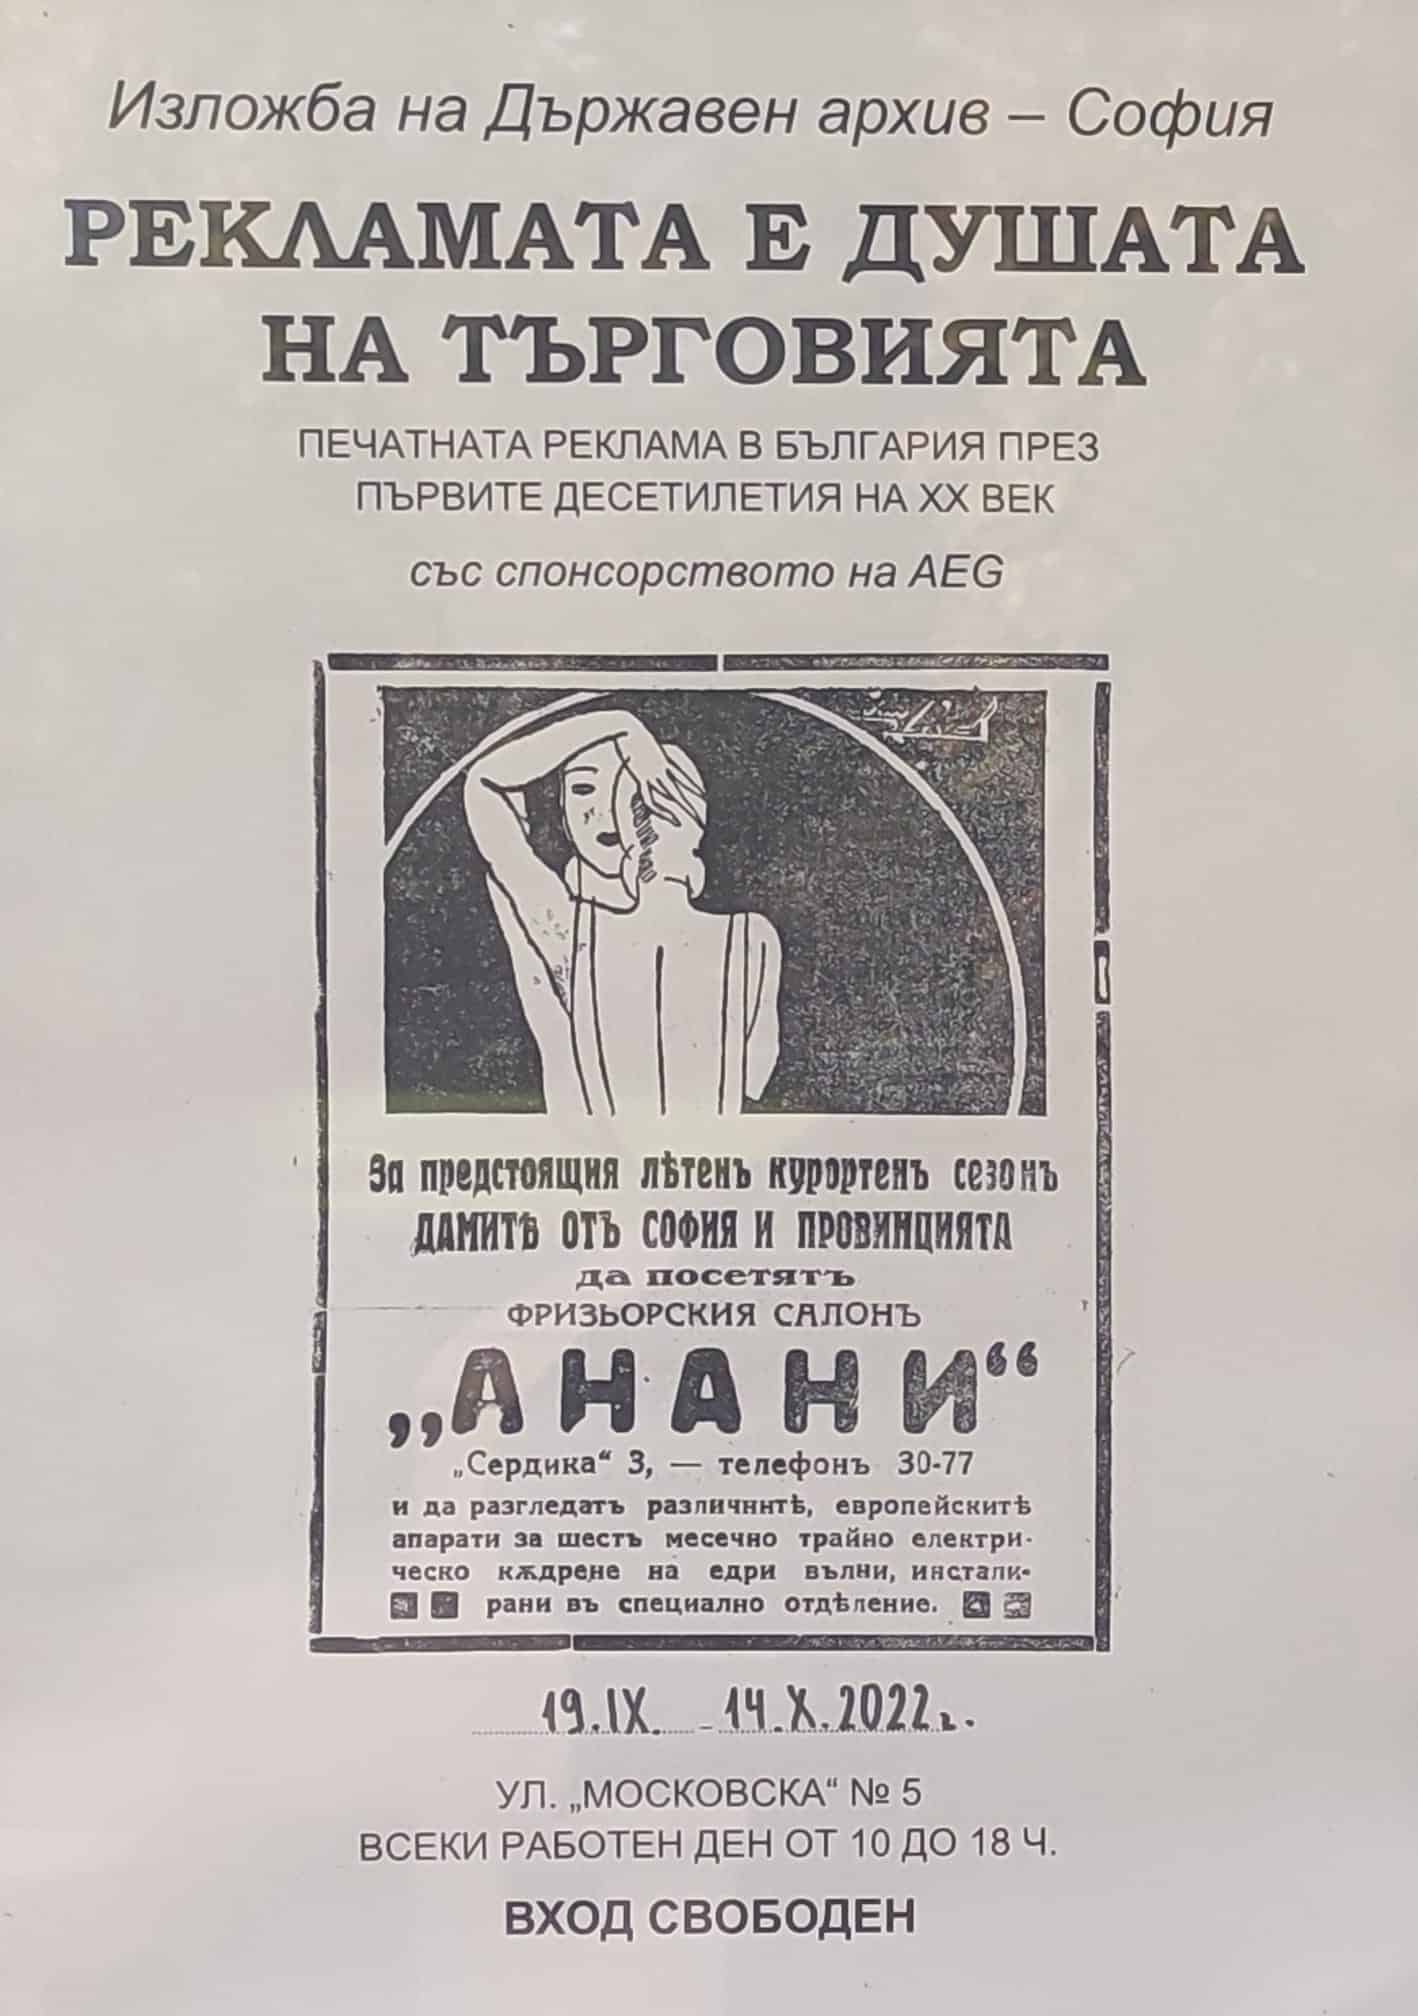 Уникална изложба на рекламите в България в началото на 20-ти век